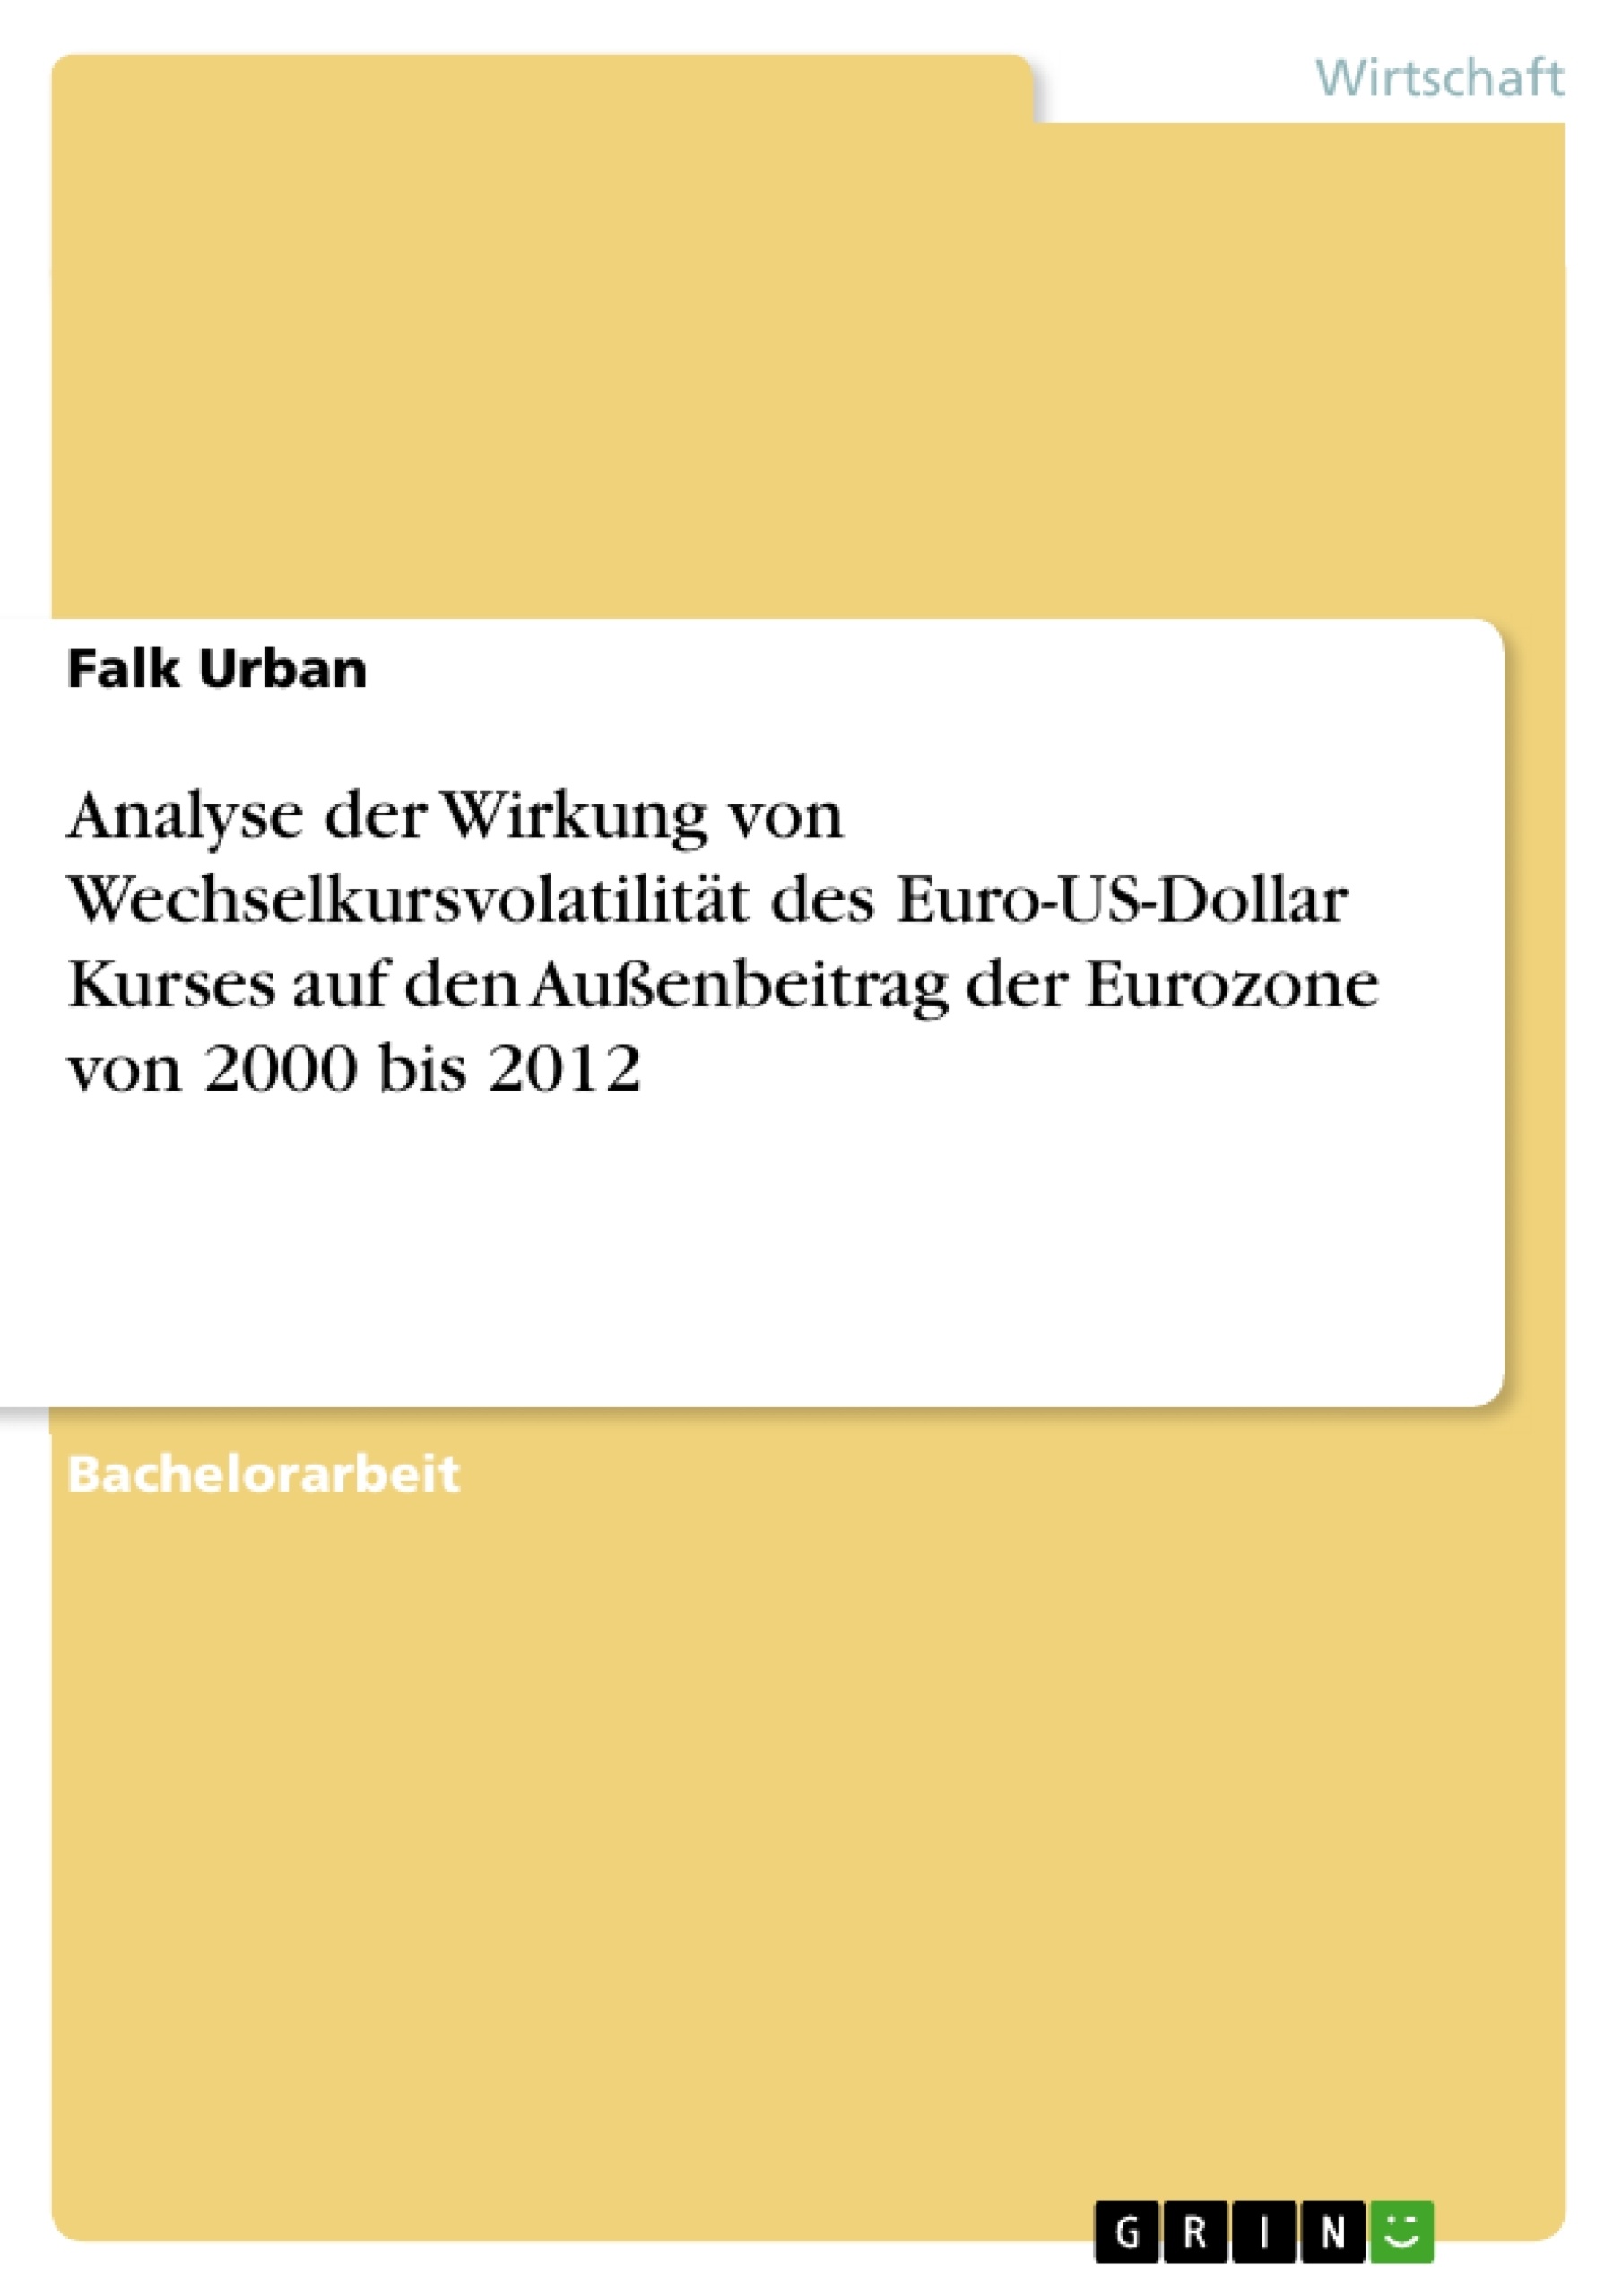 Title: Analyse der Wirkung von Wechselkursvolatilität des Euro-US-Dollar Kurses auf den Außenbeitrag der Eurozone von 2000 bis 2012